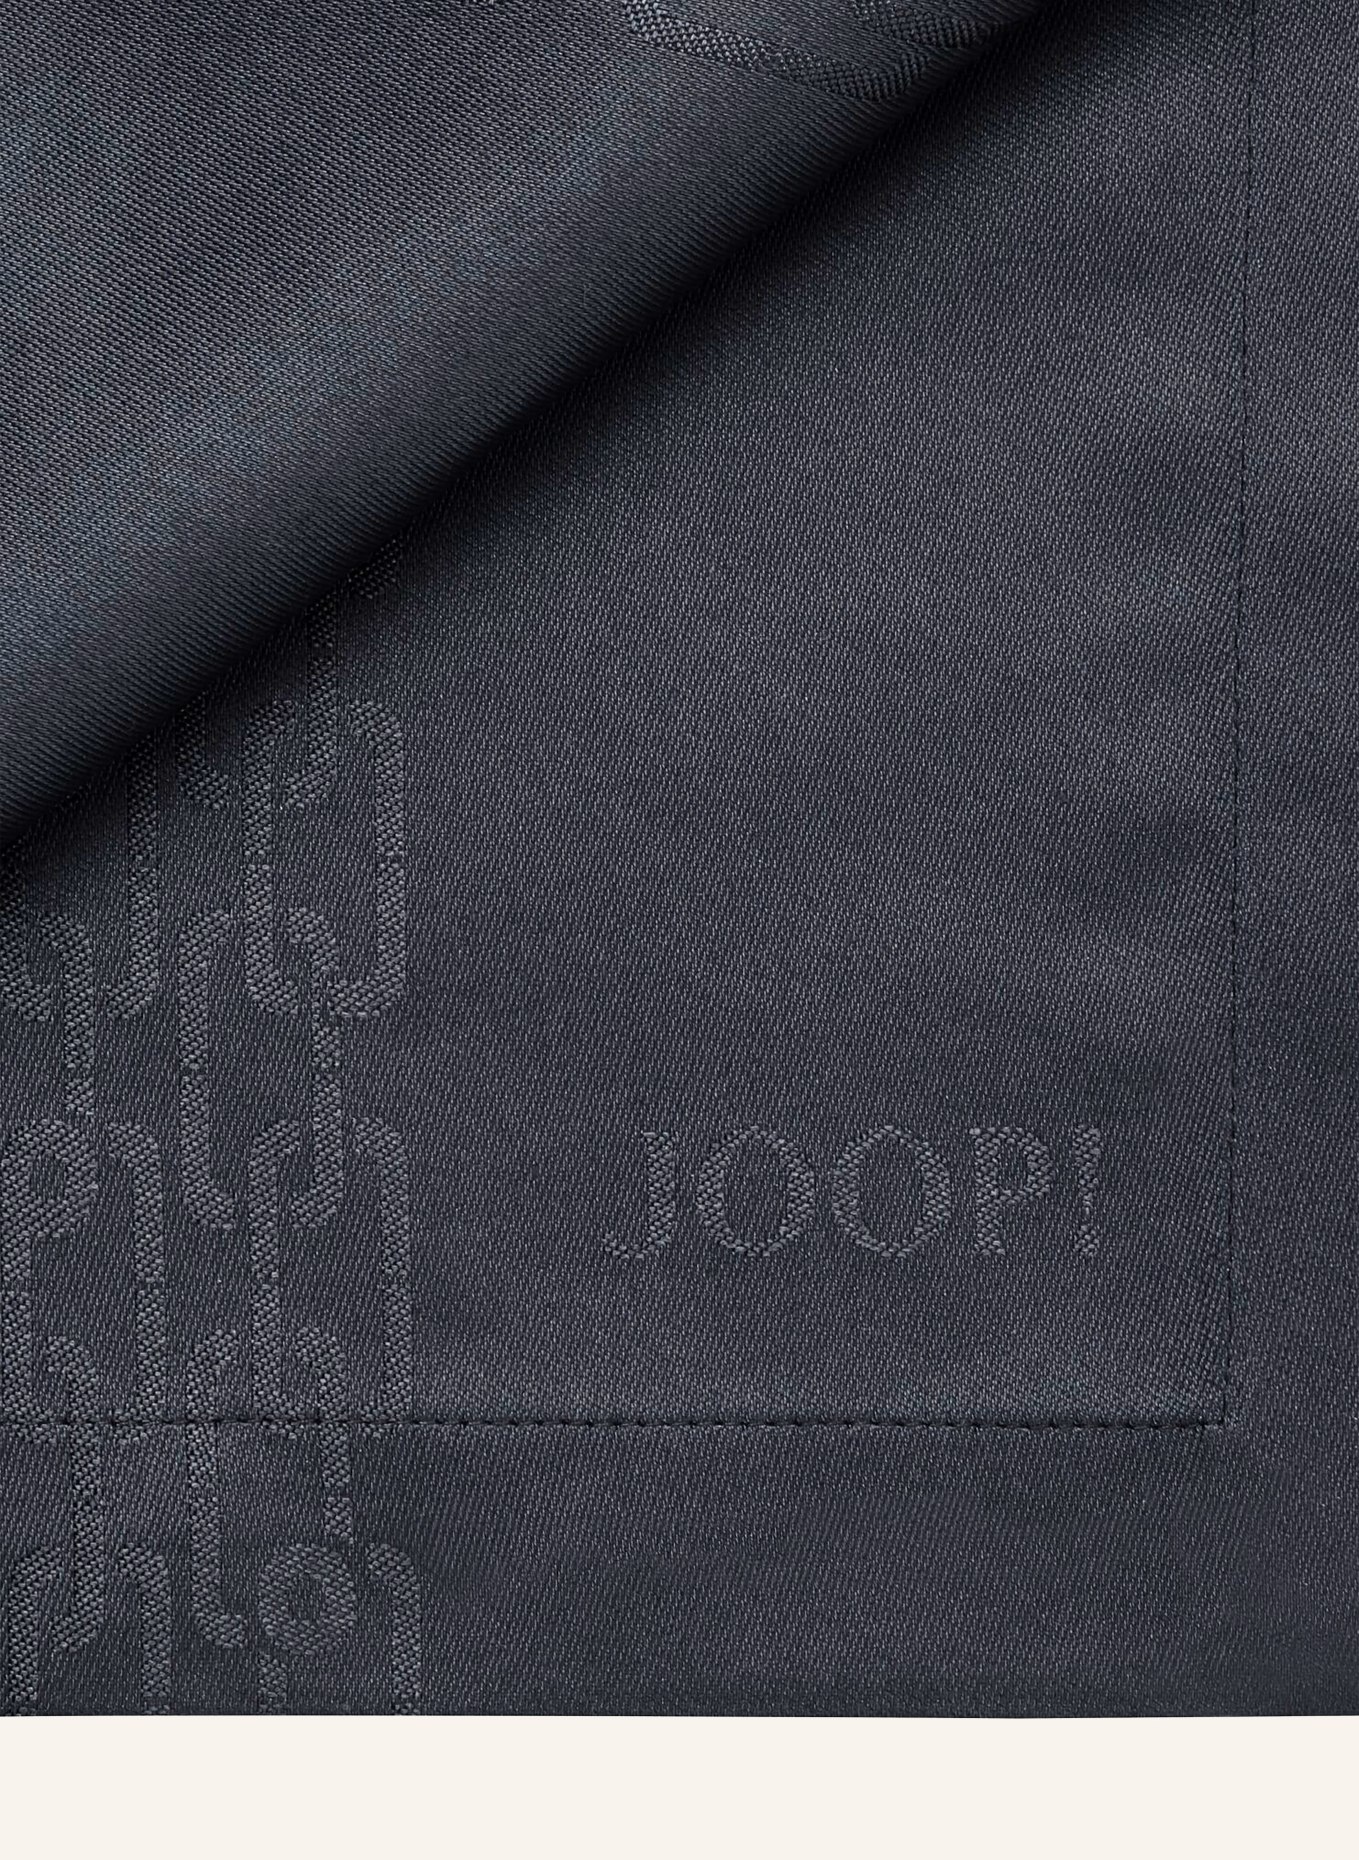 JOOP! Table runner JOOP! CHAINS, Color: DARK BLUE (Image 3)